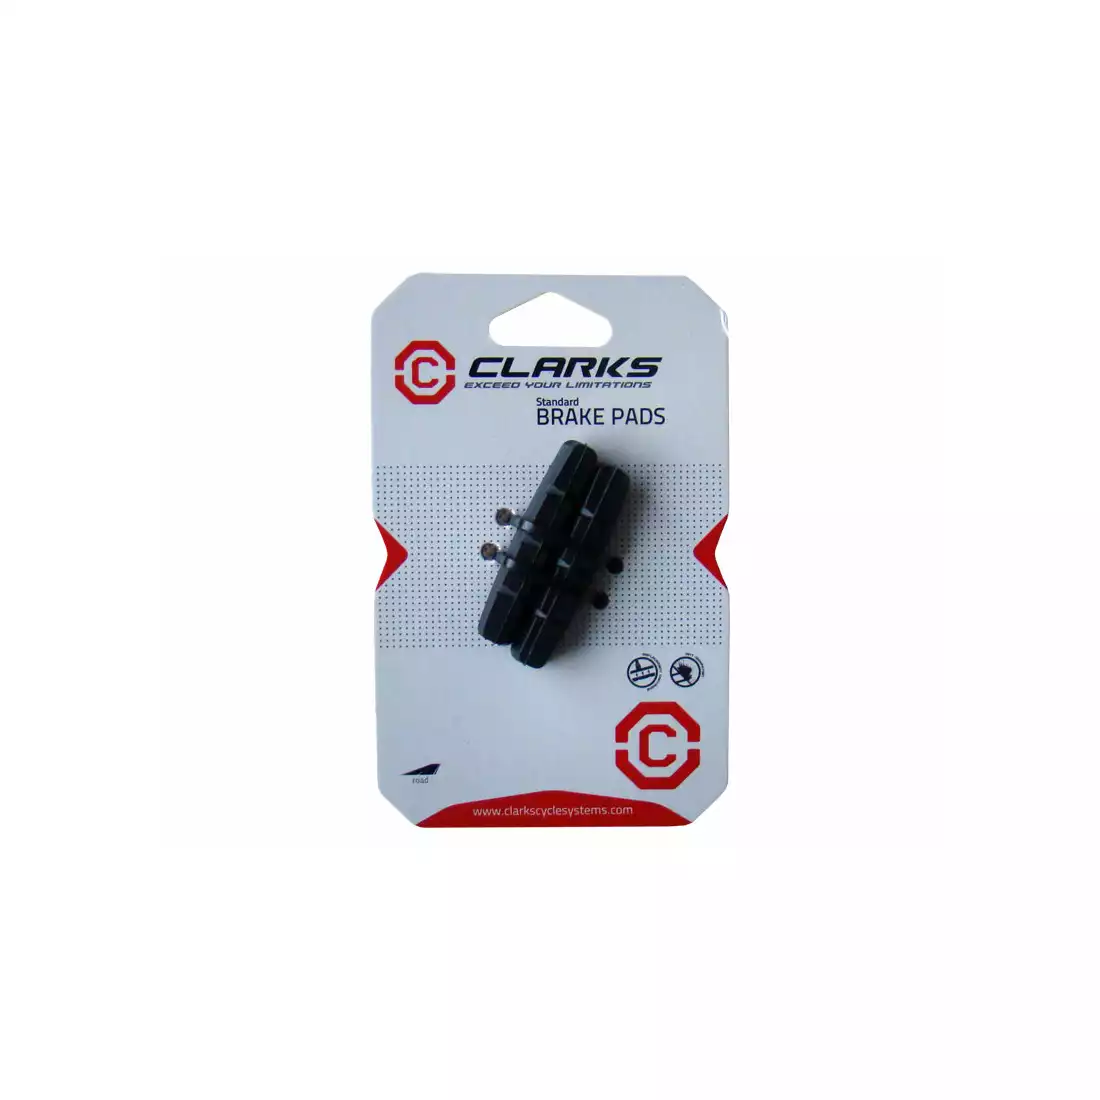 CLARKS CP200 Brzdové obloženia pre brzdy Shimano Dura-Ace, Ultergra, 50mm, čierna